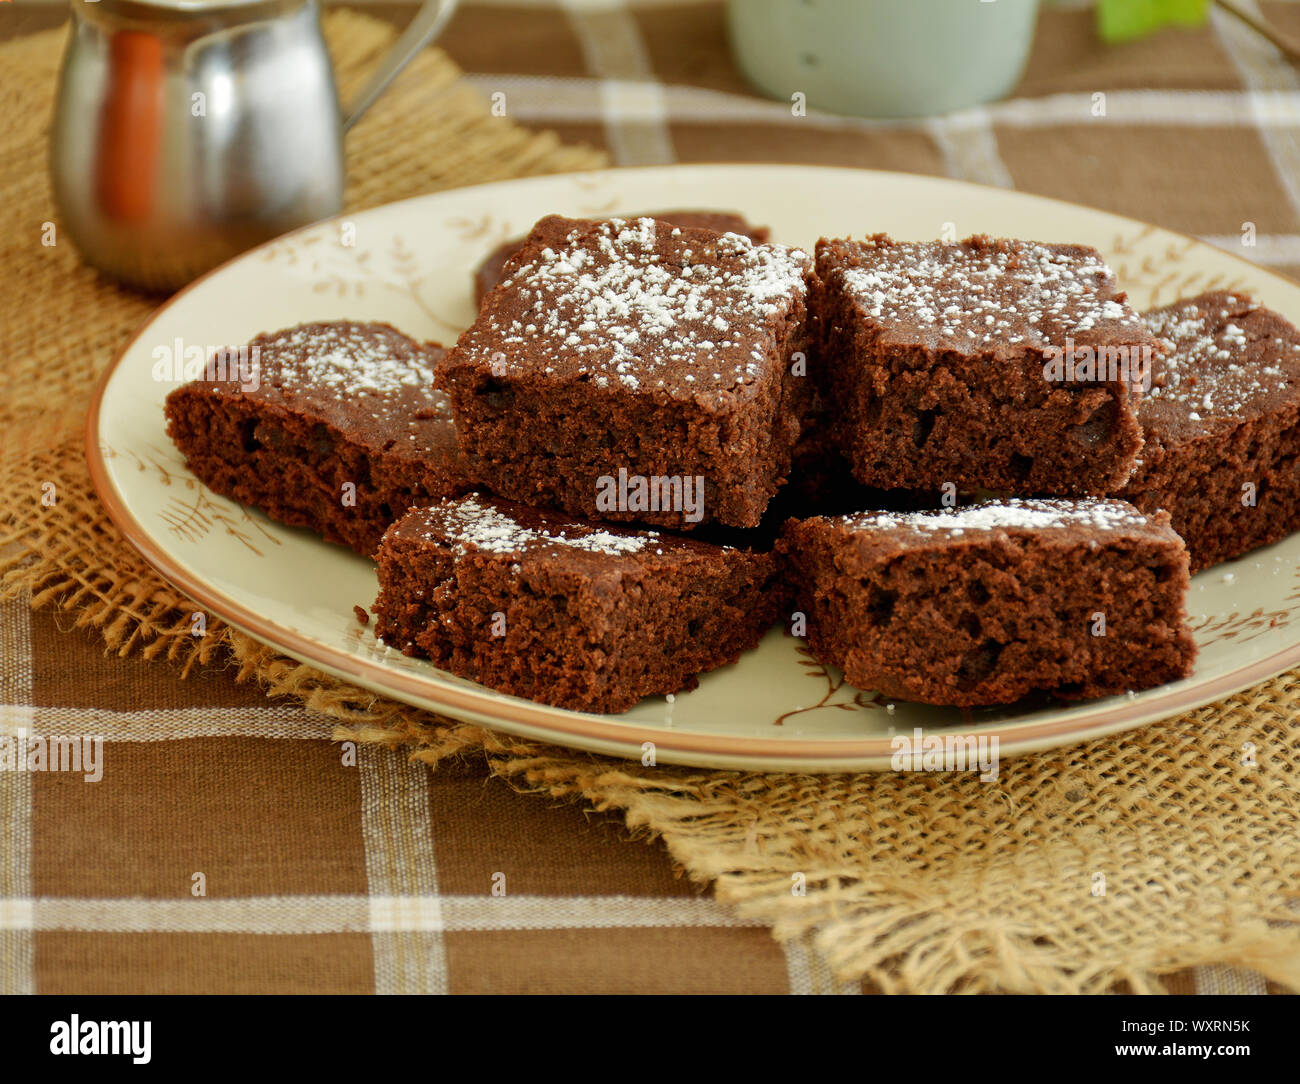 Brownies fait maison rustique dans un cadre d'automne. Format horizontal avec l'accent sur l'avant de brownies. Banque D'Images